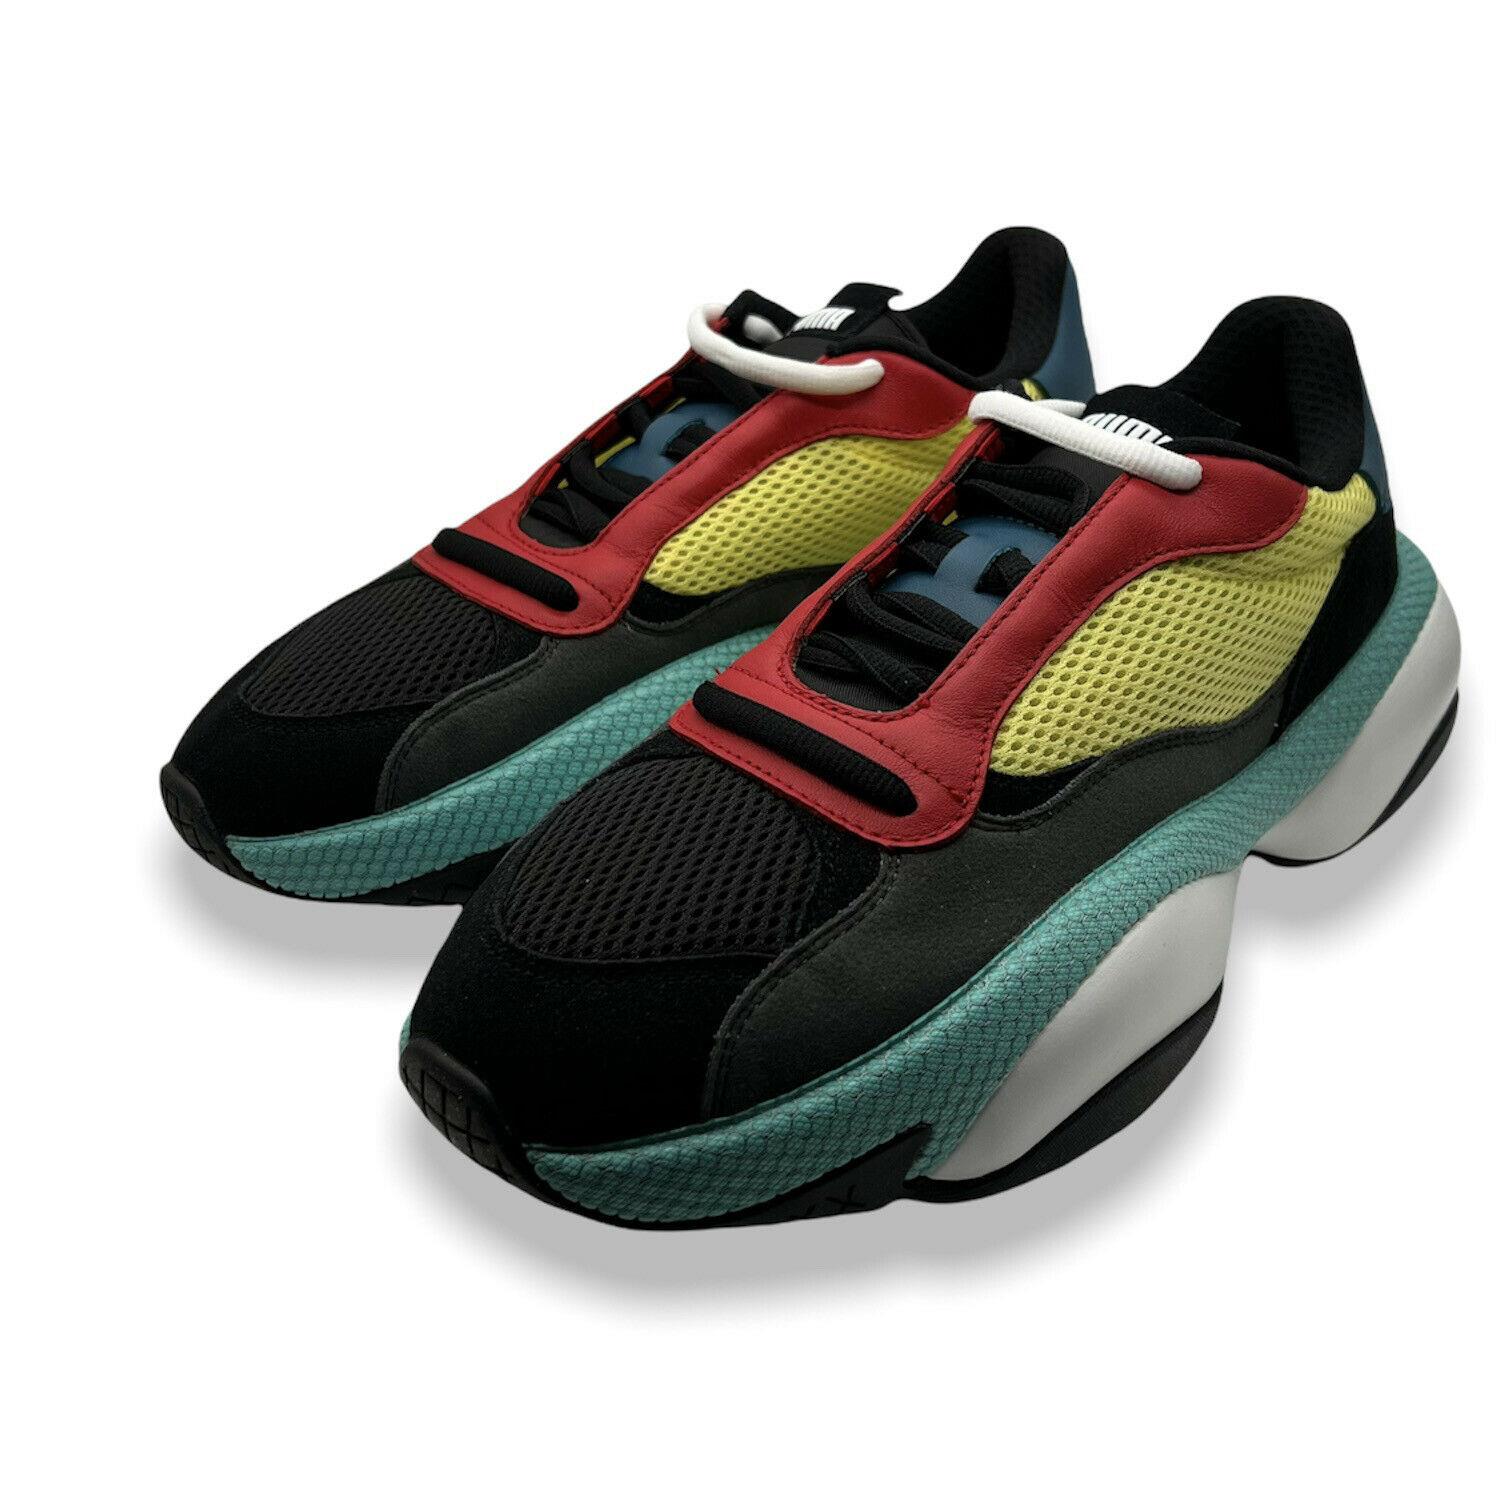 Puma Unisex Multicolor Alteration Kurve Low Top Athletic Sneaker Shoes Size 10.5